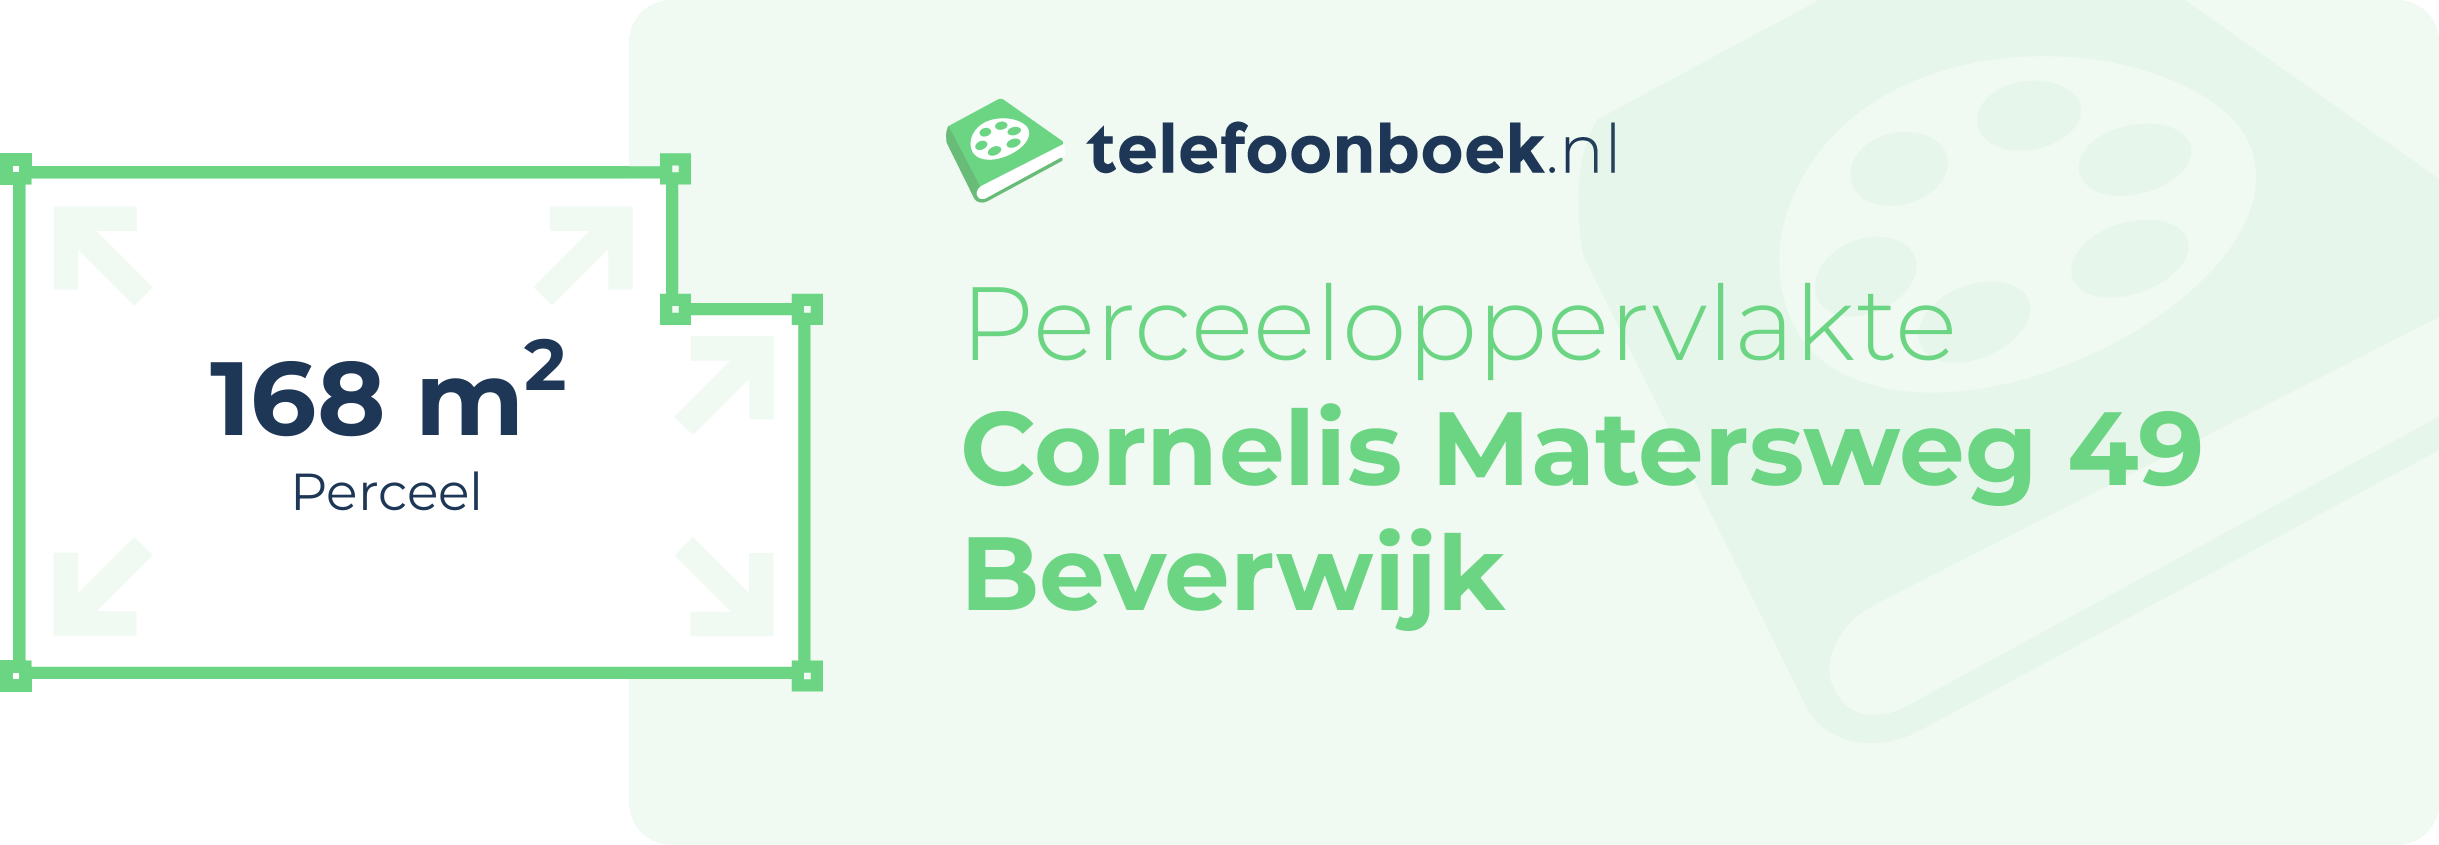 Perceeloppervlakte Cornelis Matersweg 49 Beverwijk